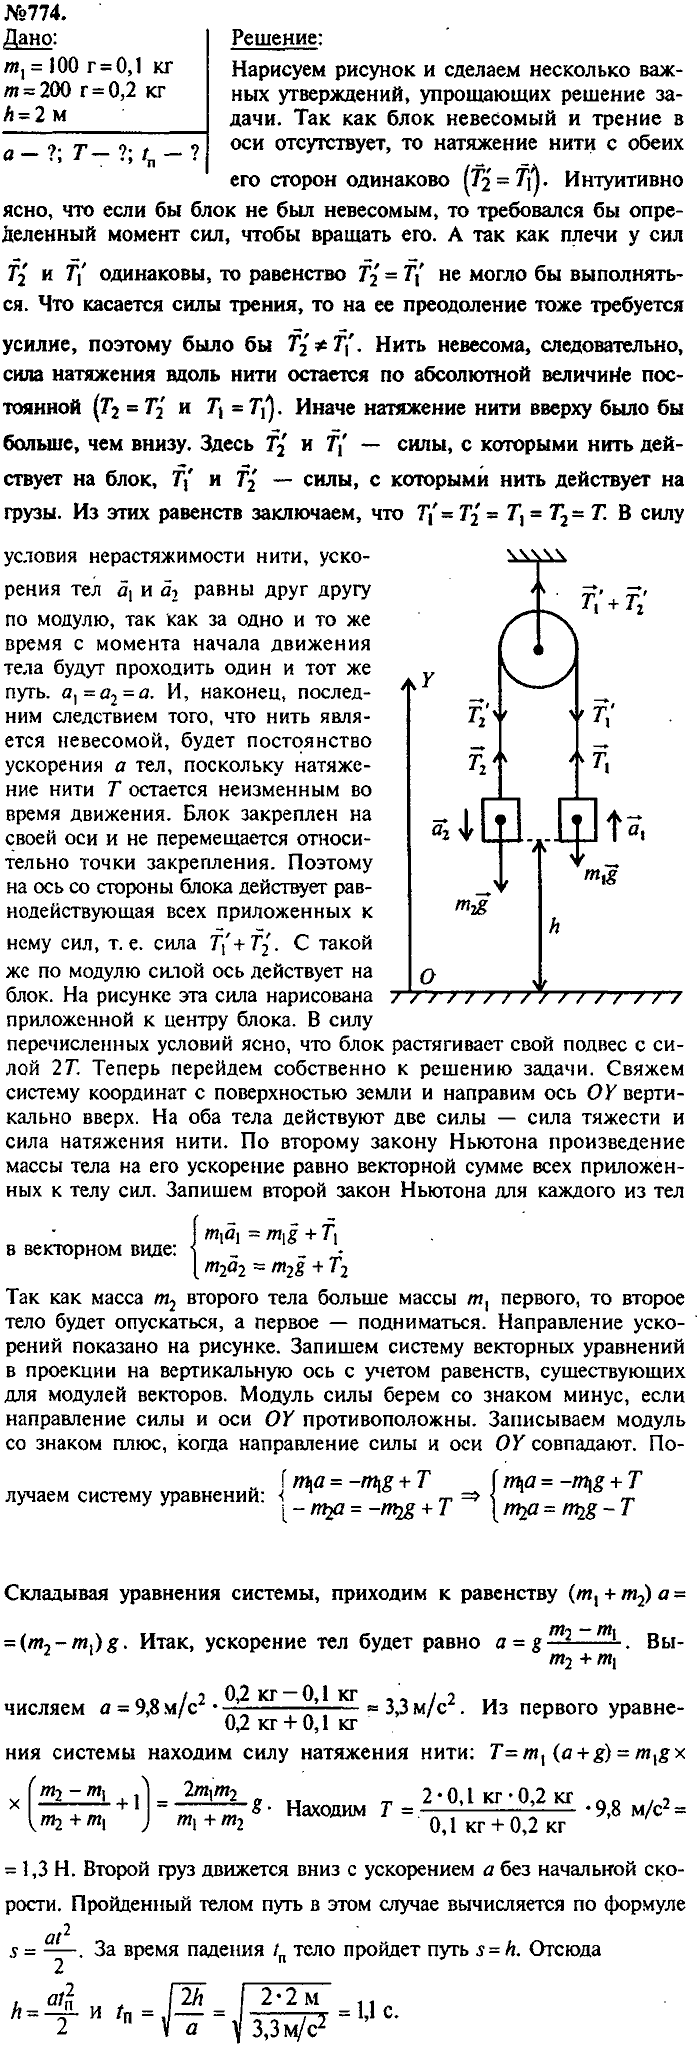 Сборник задач, 7 класс, Лукашик, Иванова, 2001-2011, задача: 774